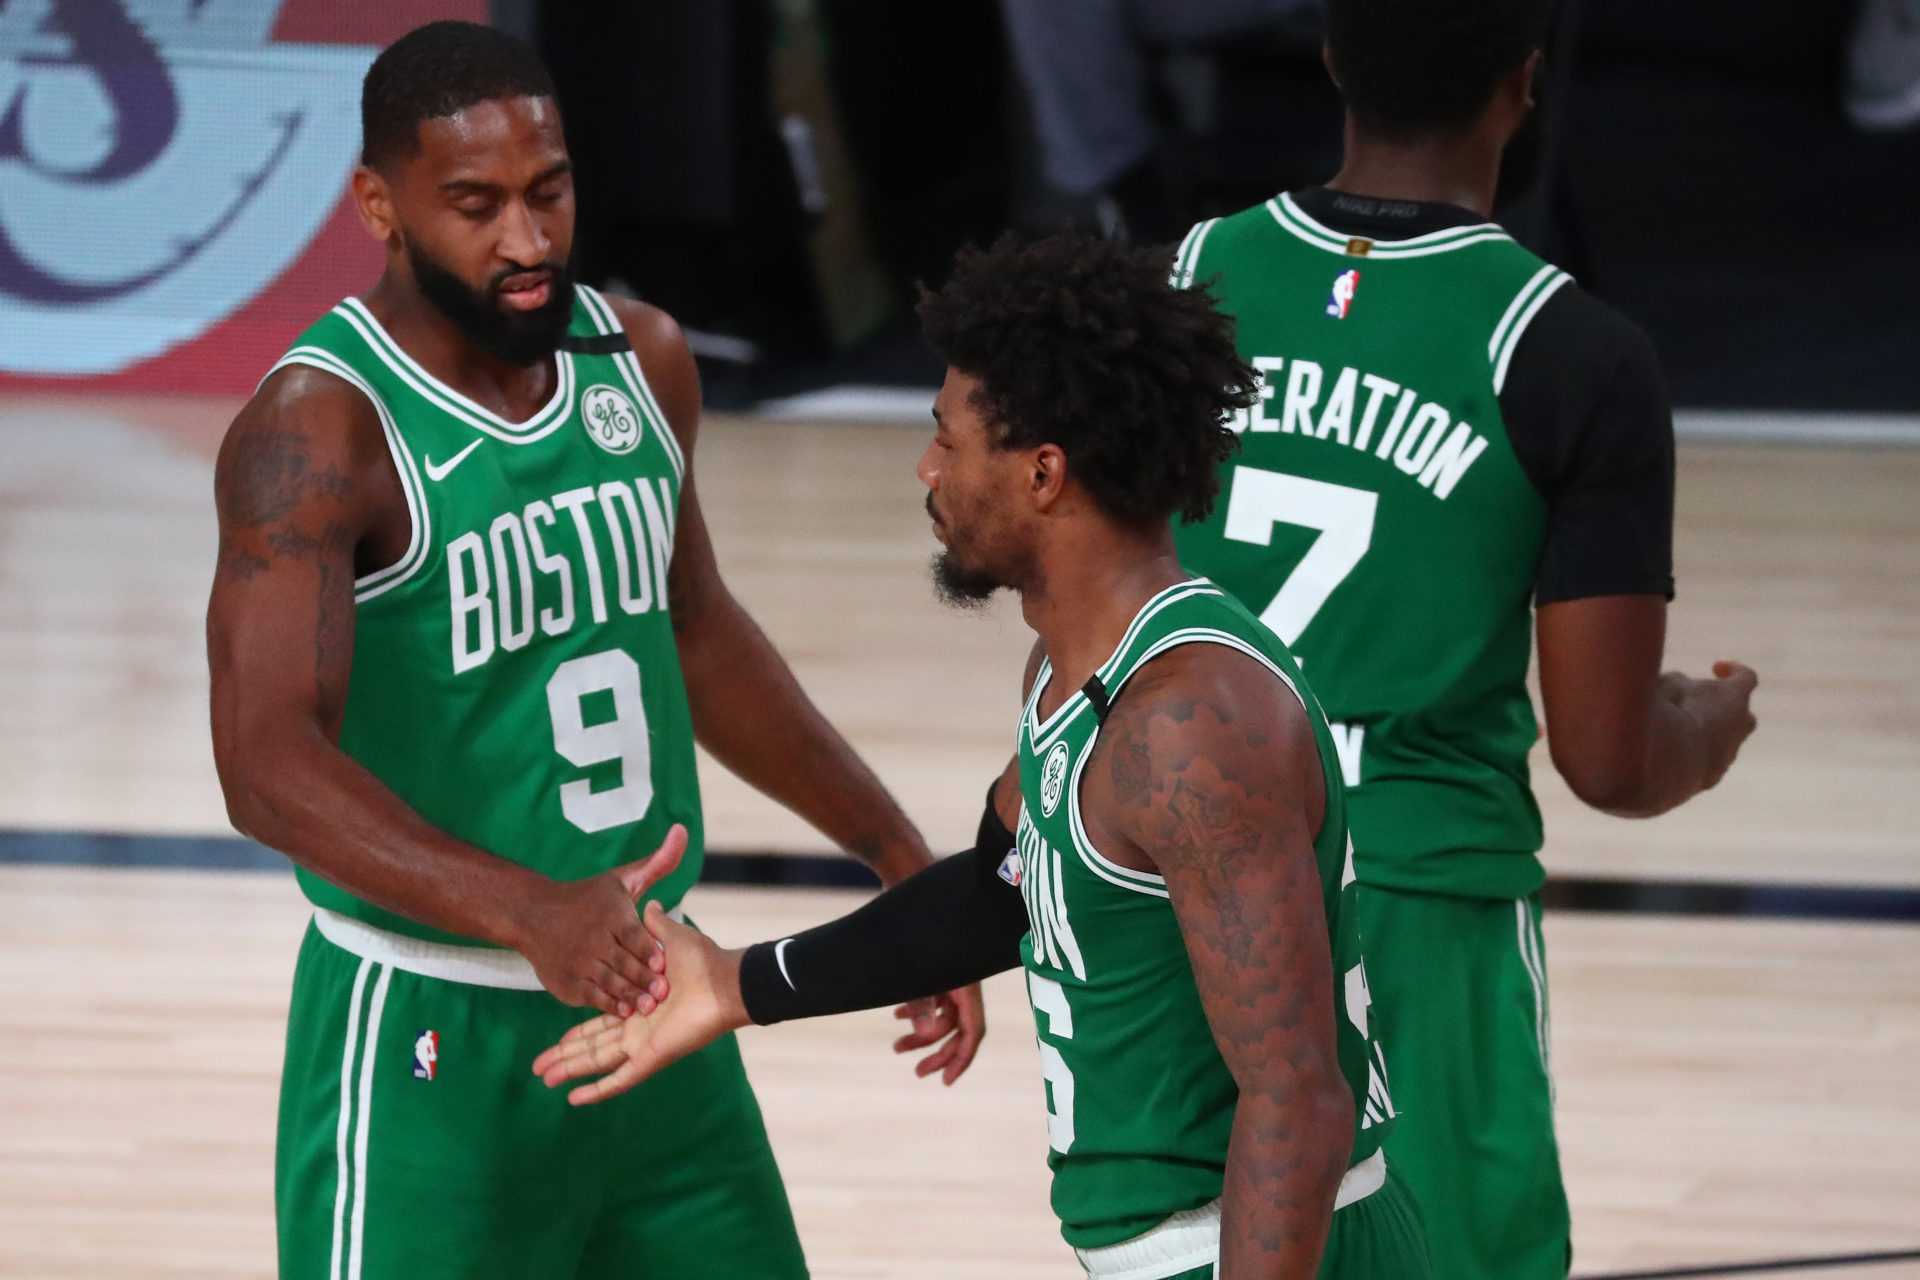 Trois changements que les Celtics de Boston doivent immédiatement apporter pour l'année prochaine